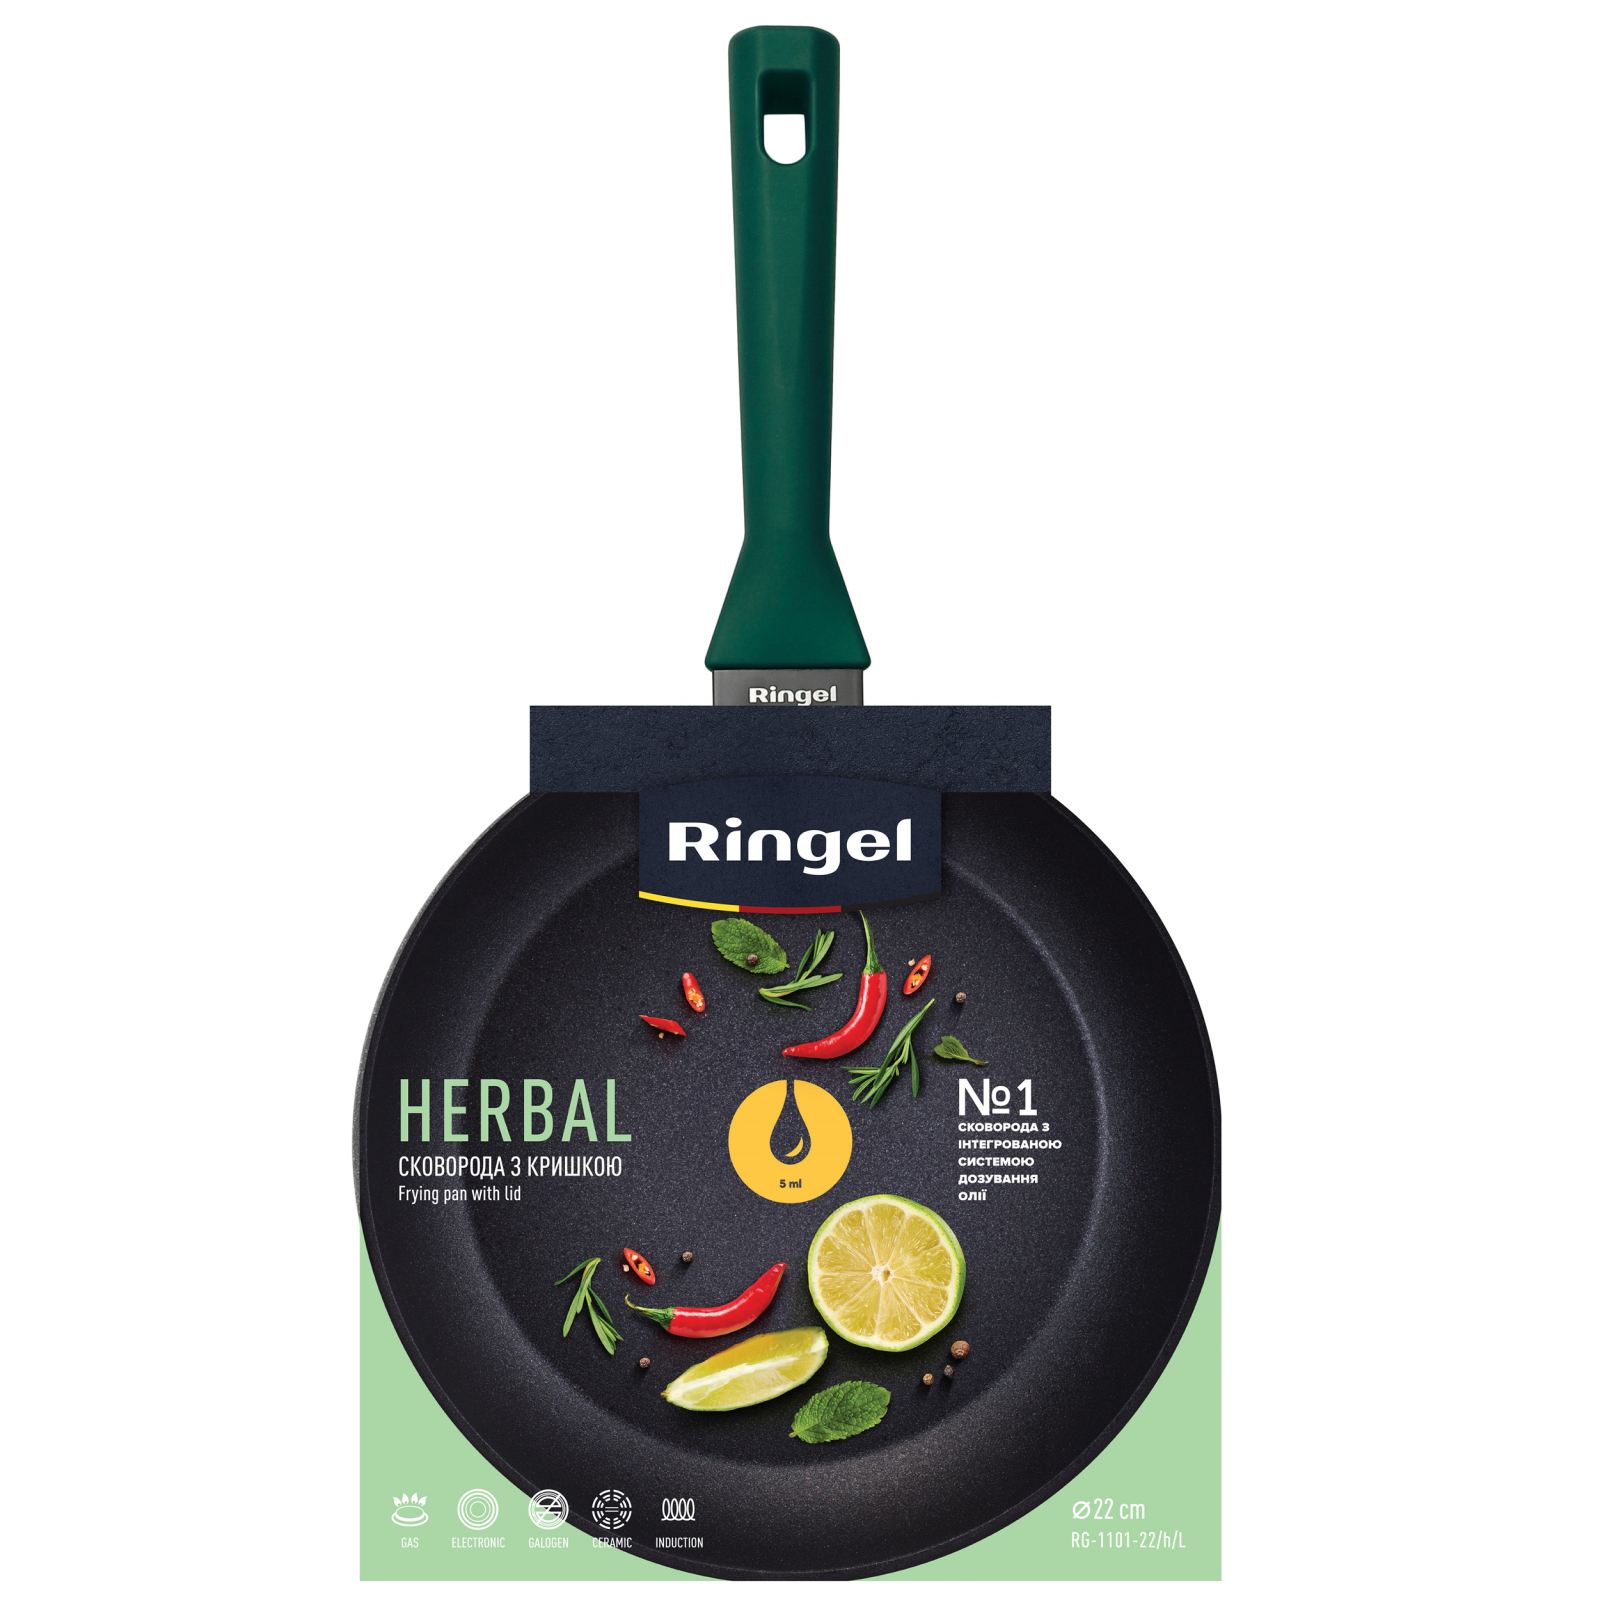 Сковорода Ringel Herbal 22 см (RG-1101-22/h/L) зображення 5